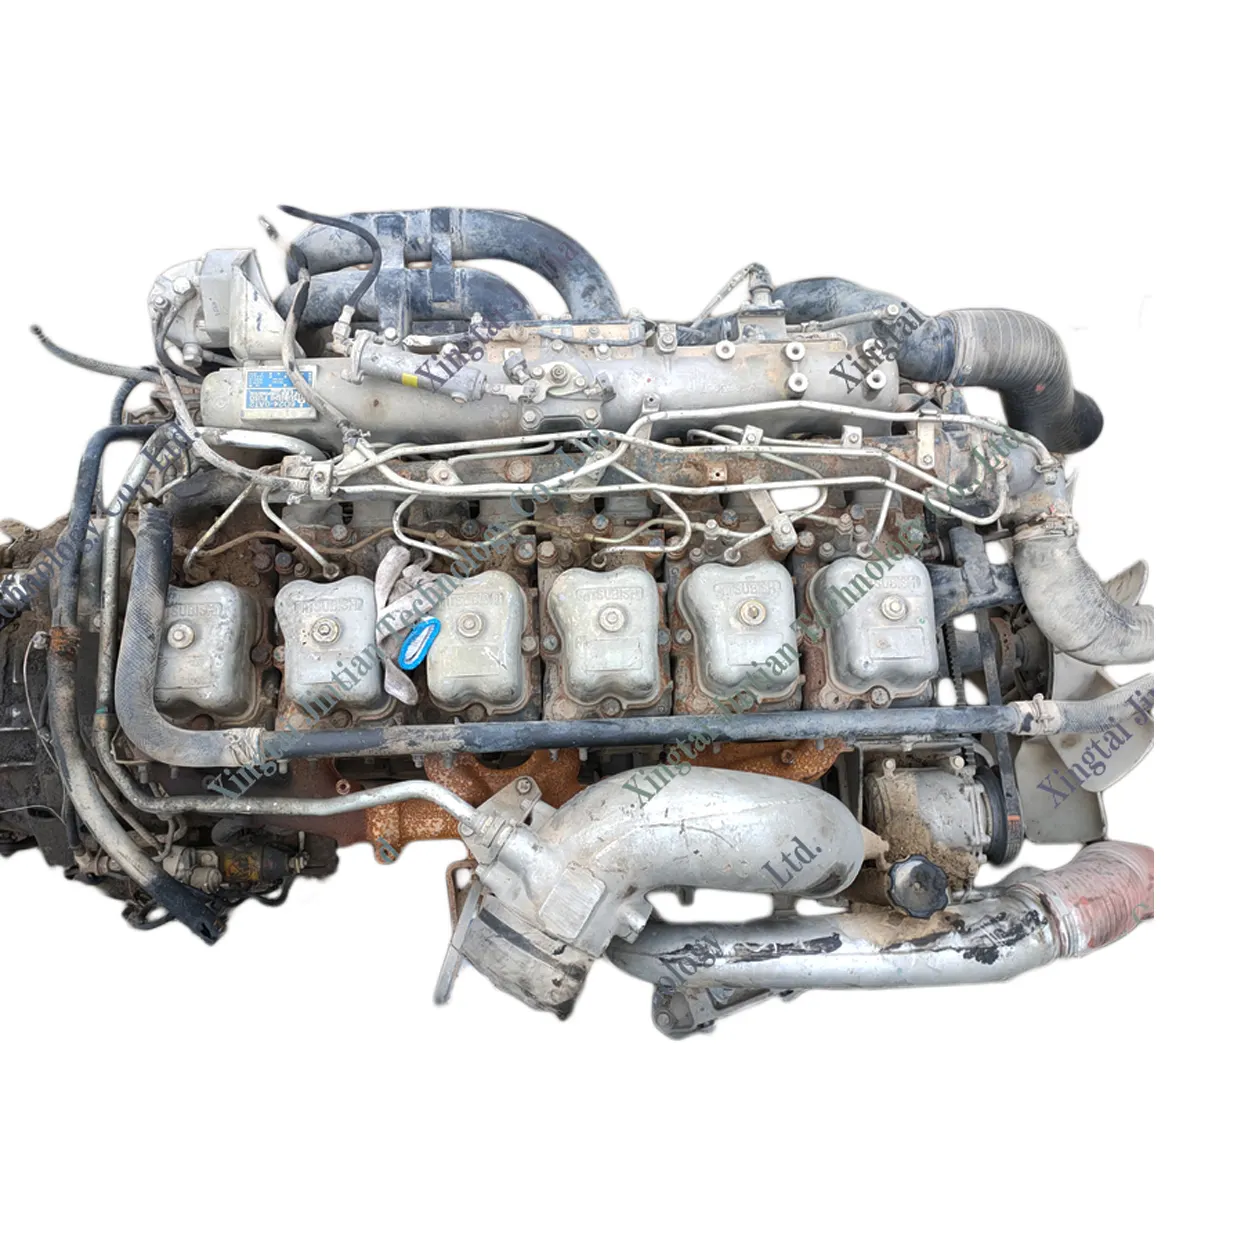 उच्च गुणवत्ता के साथ खुदाई इंजन d24 6d24t